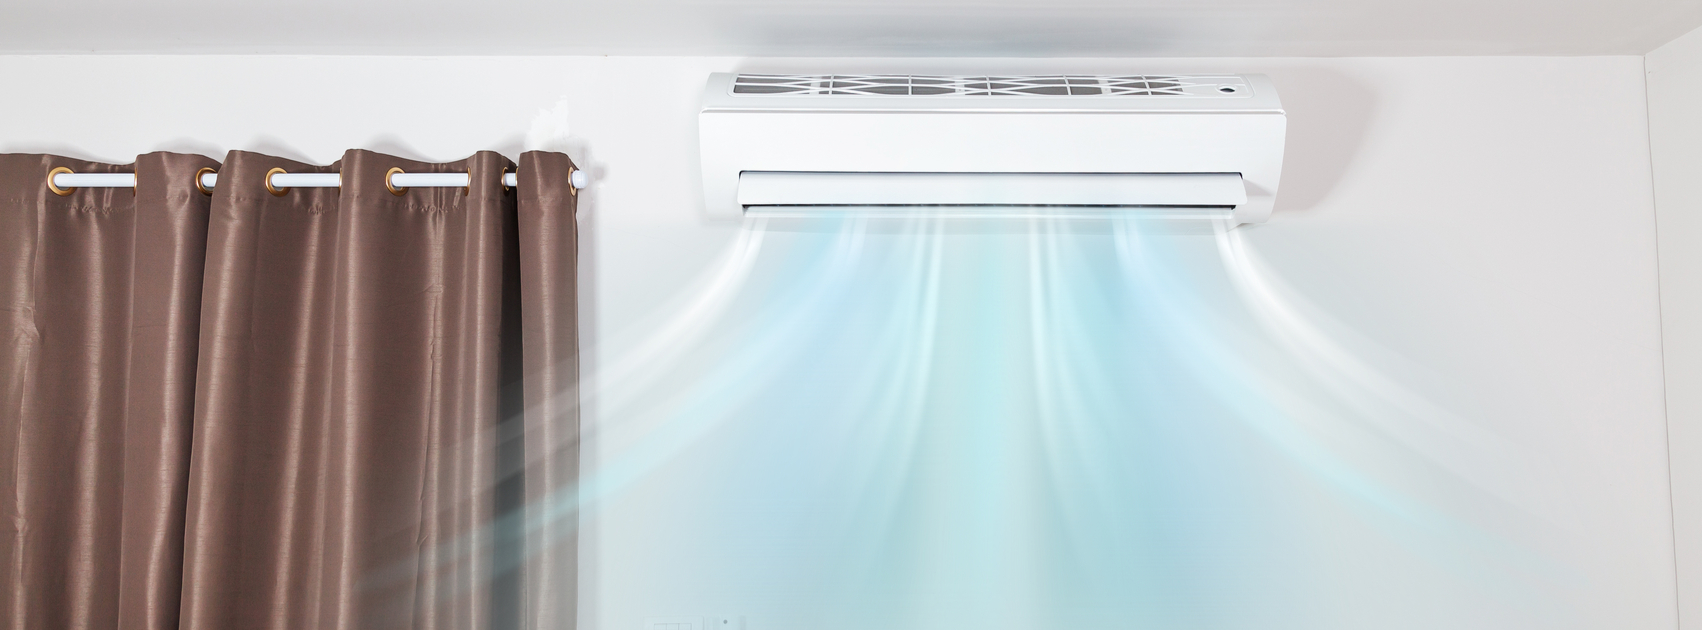 2 astuces pour choisir la climatisation de sa maison